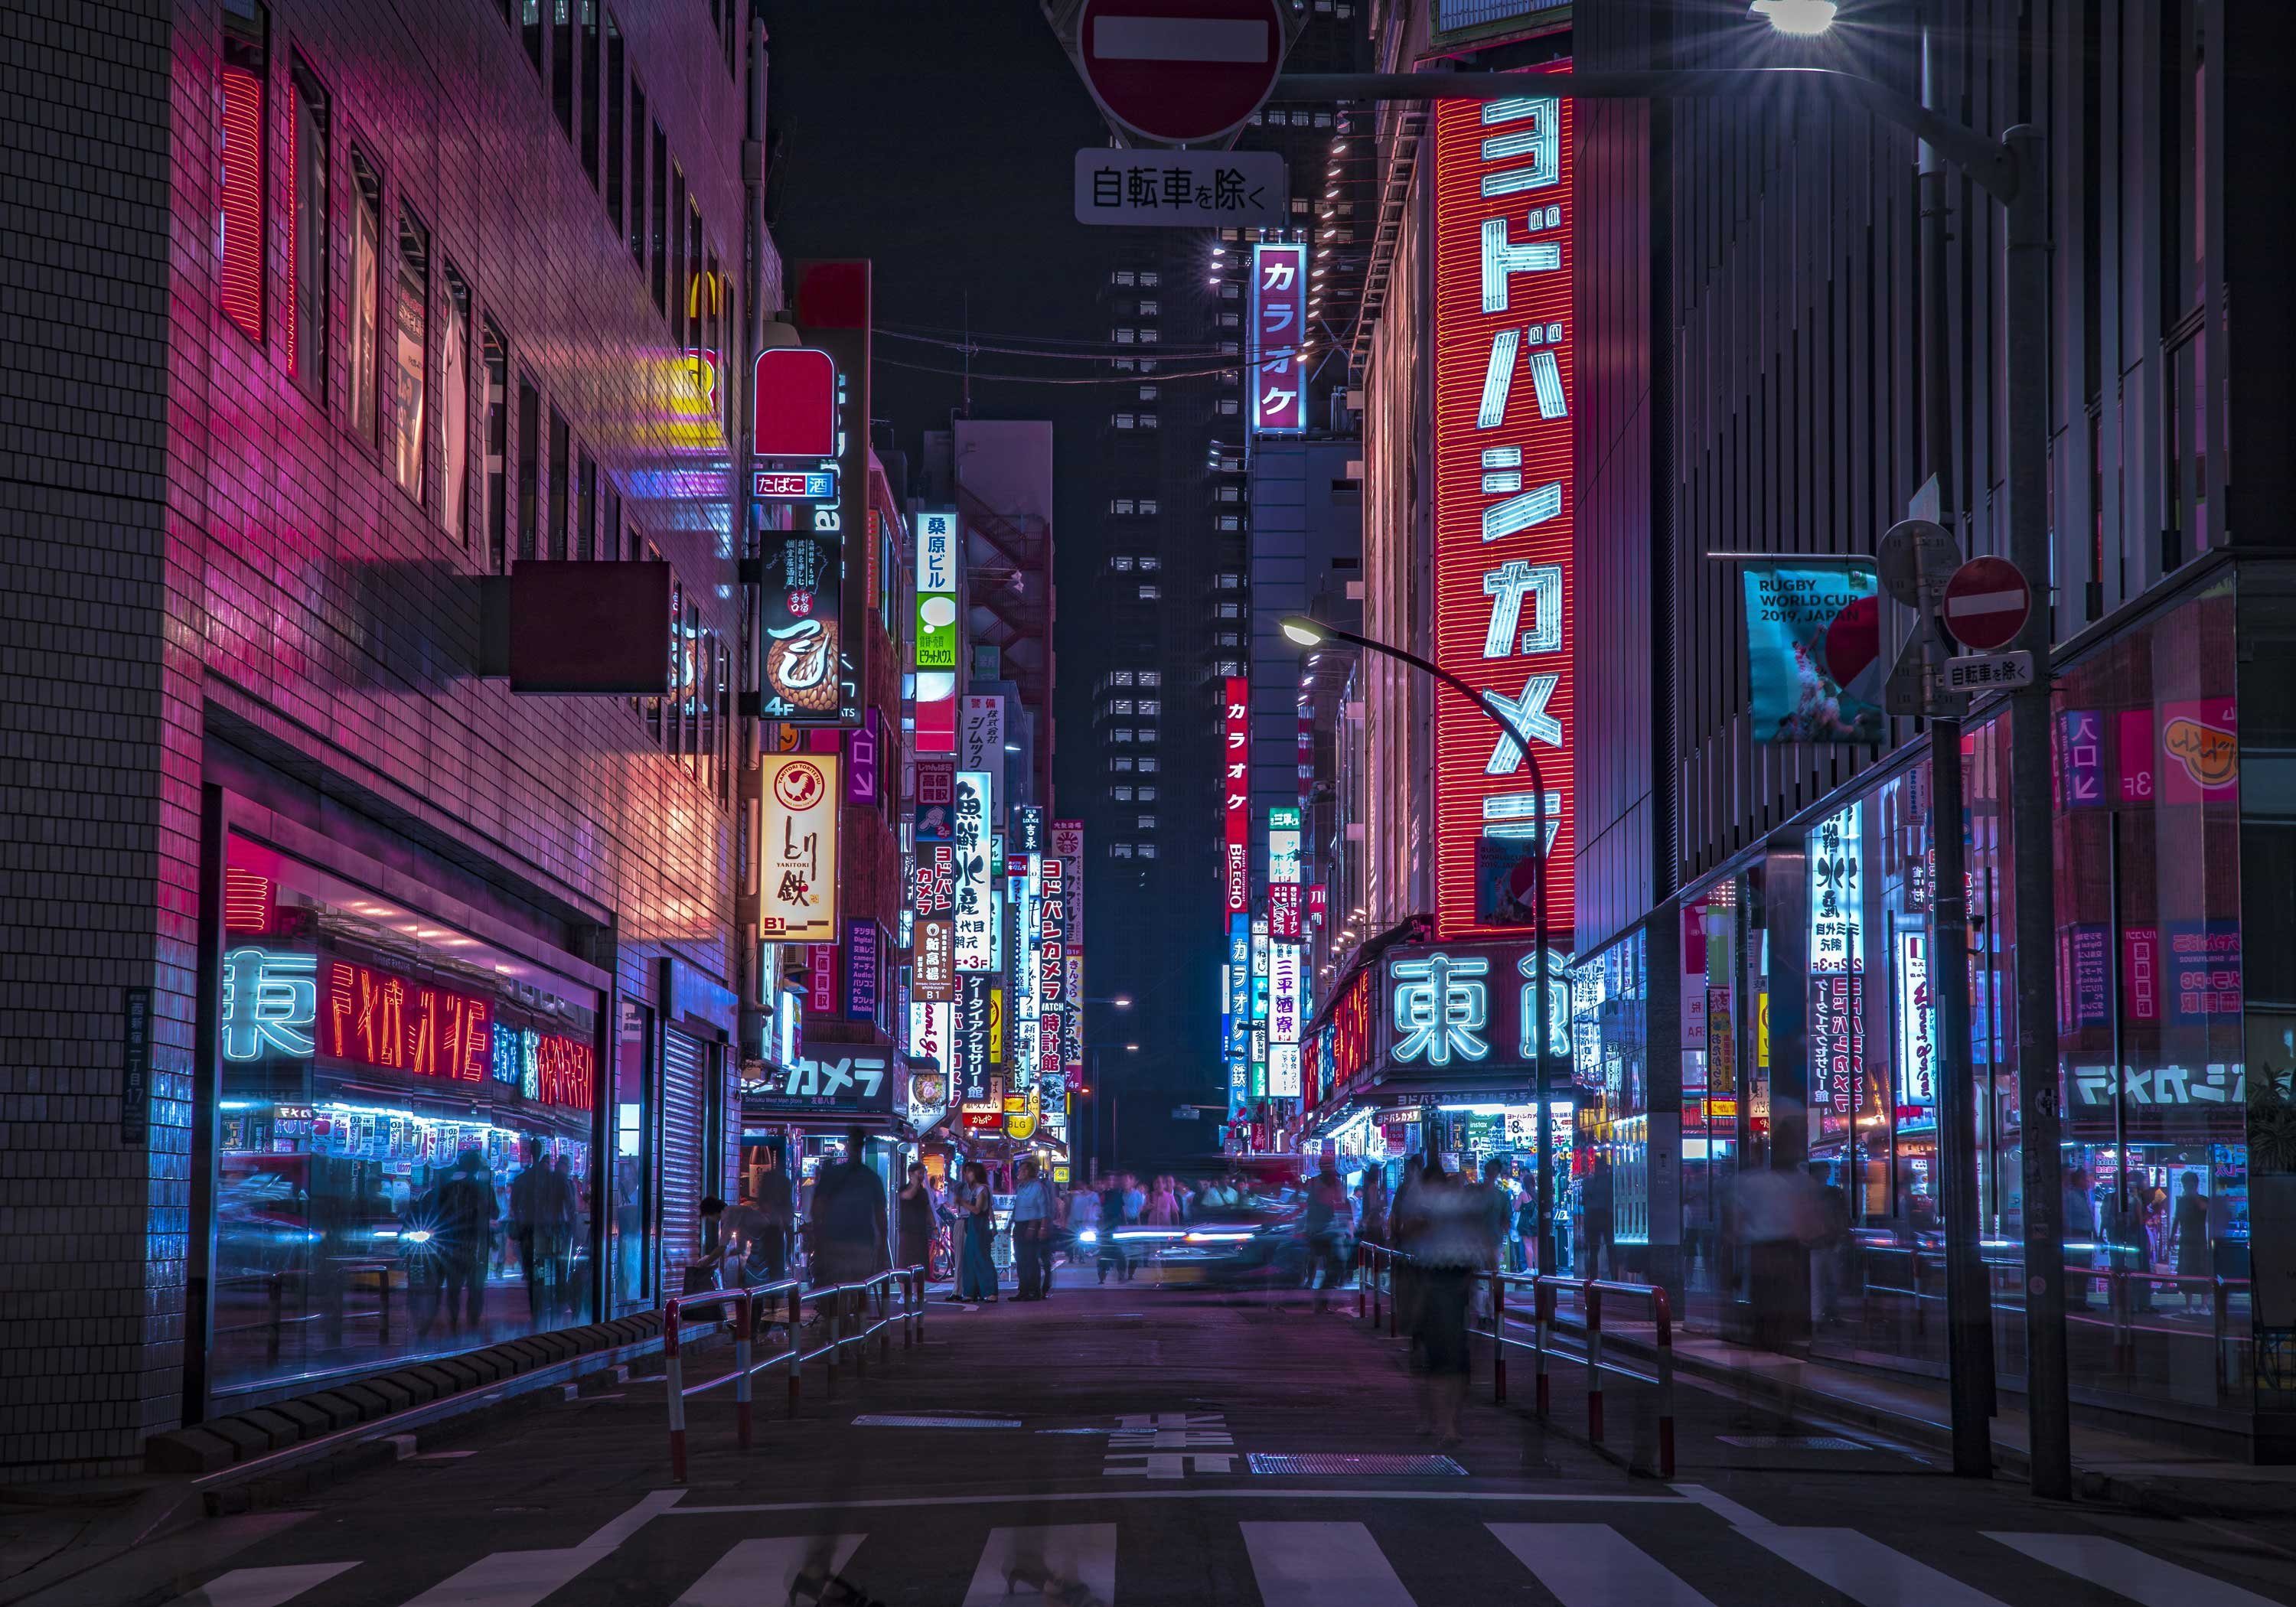 Fototapete matt, wandmotiv24 Stadt Motivtapete, bei glatt, Nacht, Japanische Wandtapete, Vliestapete